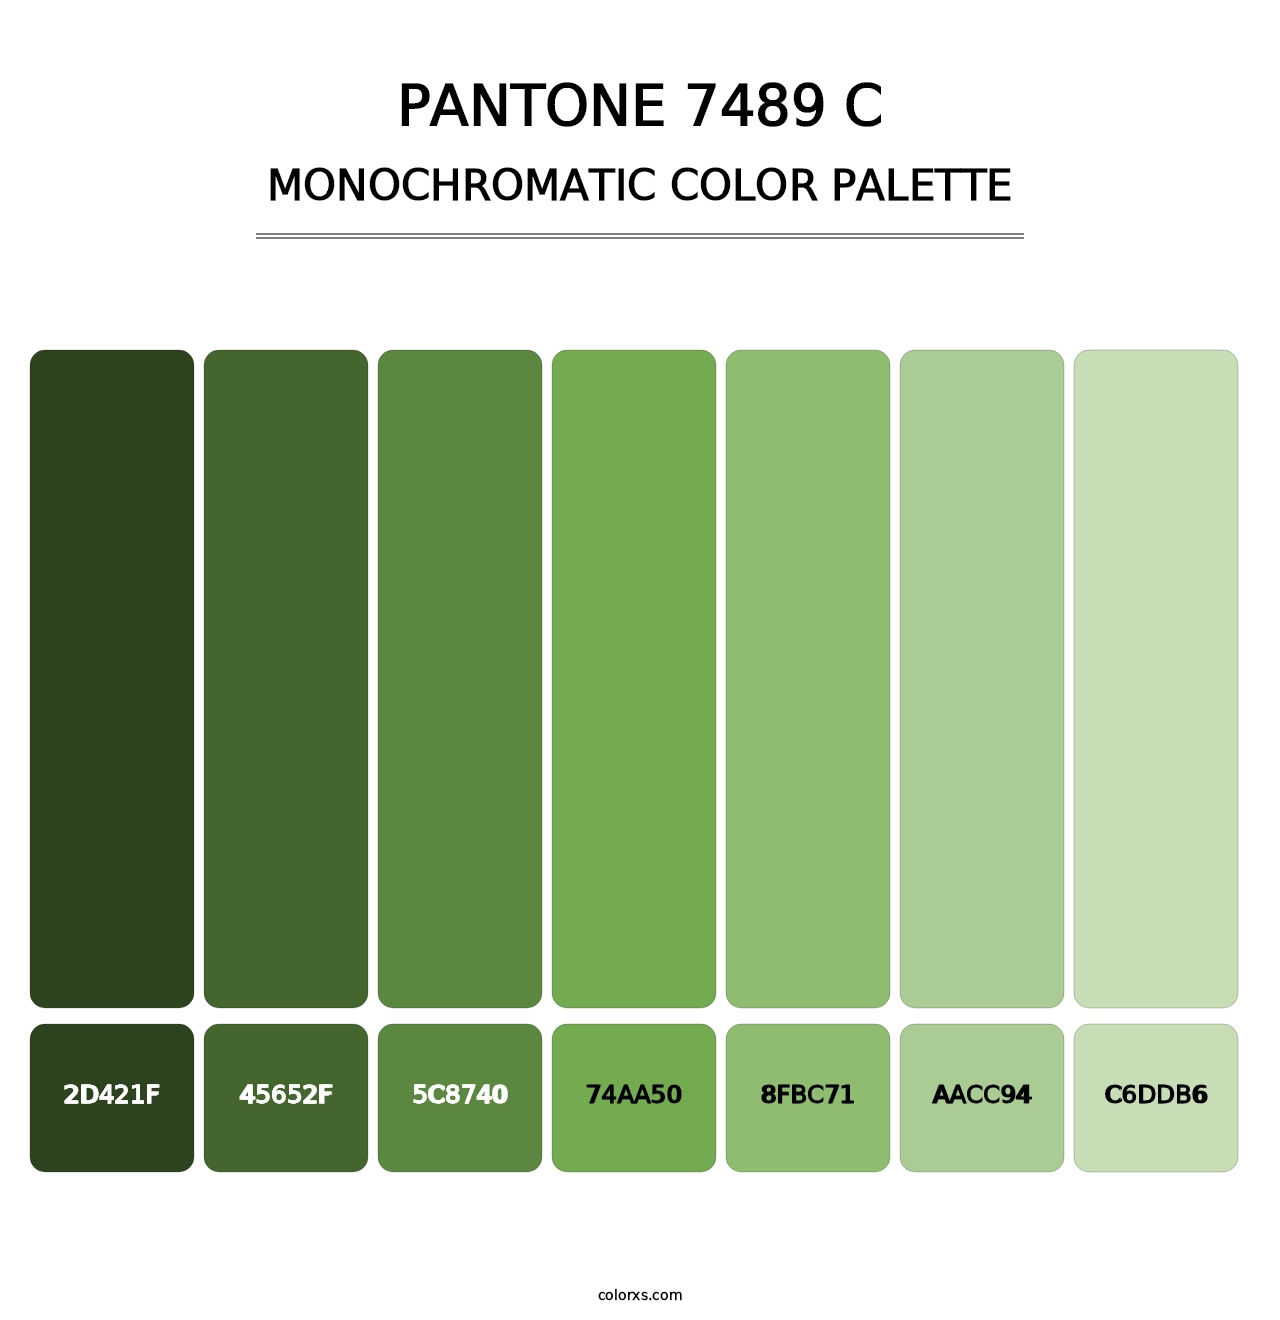 PANTONE 7489 C - Monochromatic Color Palette